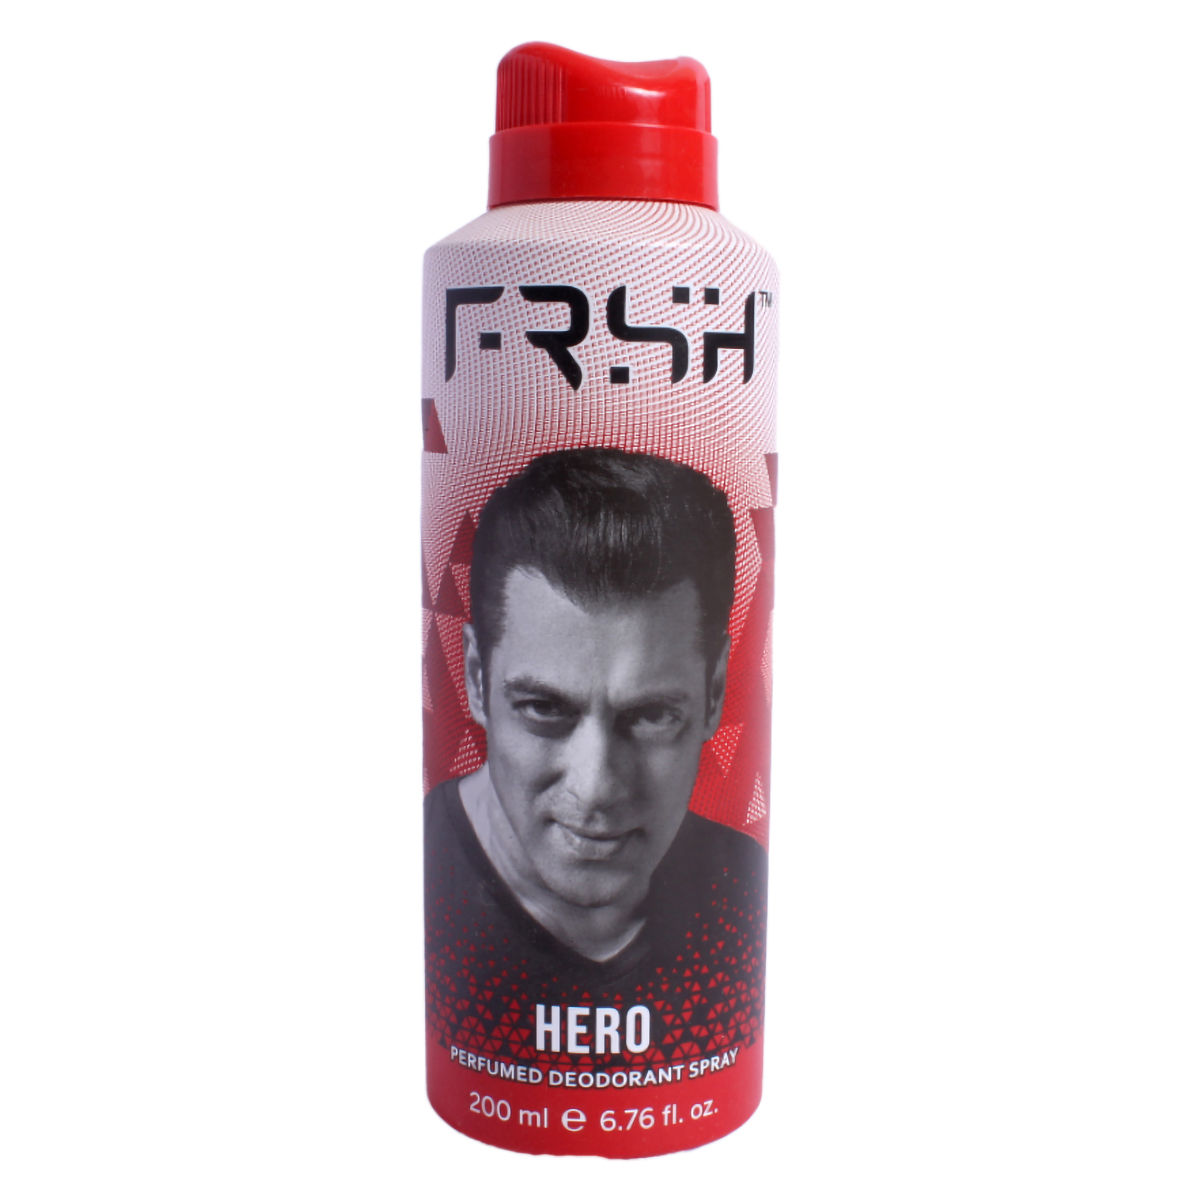 Buy Frsh Hero Perfumed Deodorant Body Spray, 200 ml Online